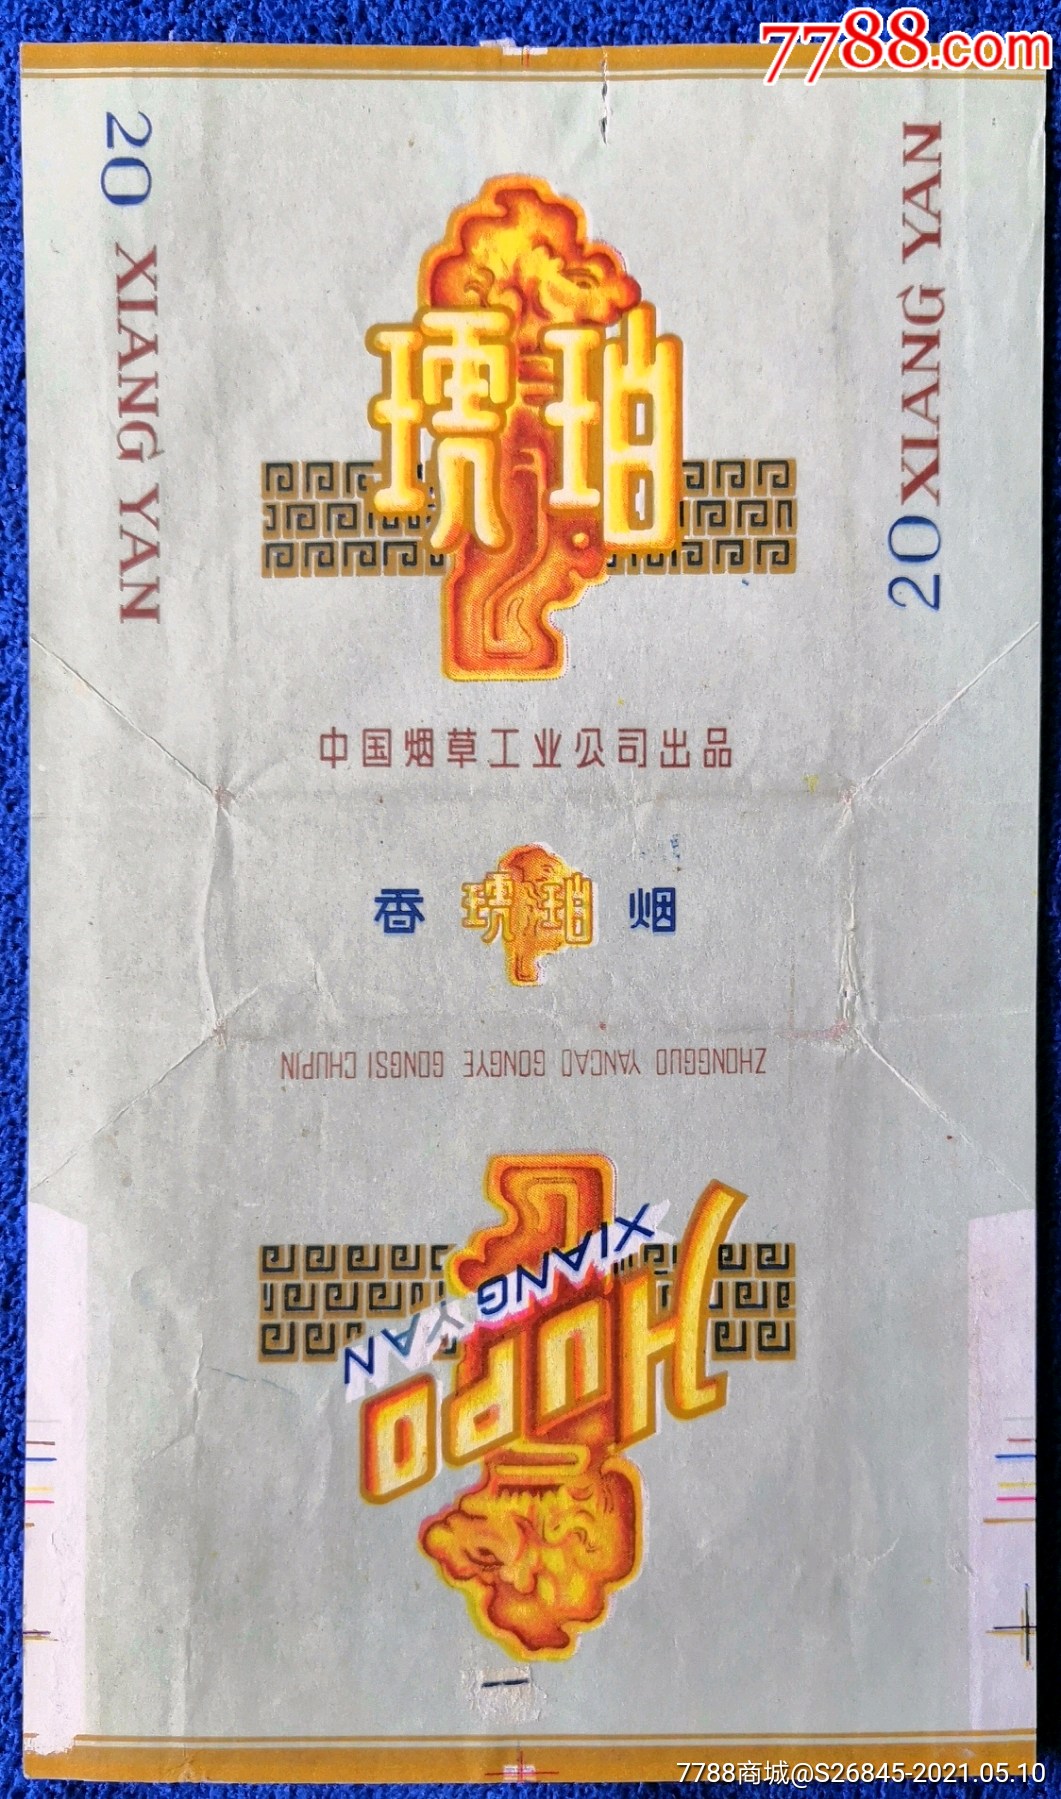 中国烟草工业公司:琥珀(拆包标)